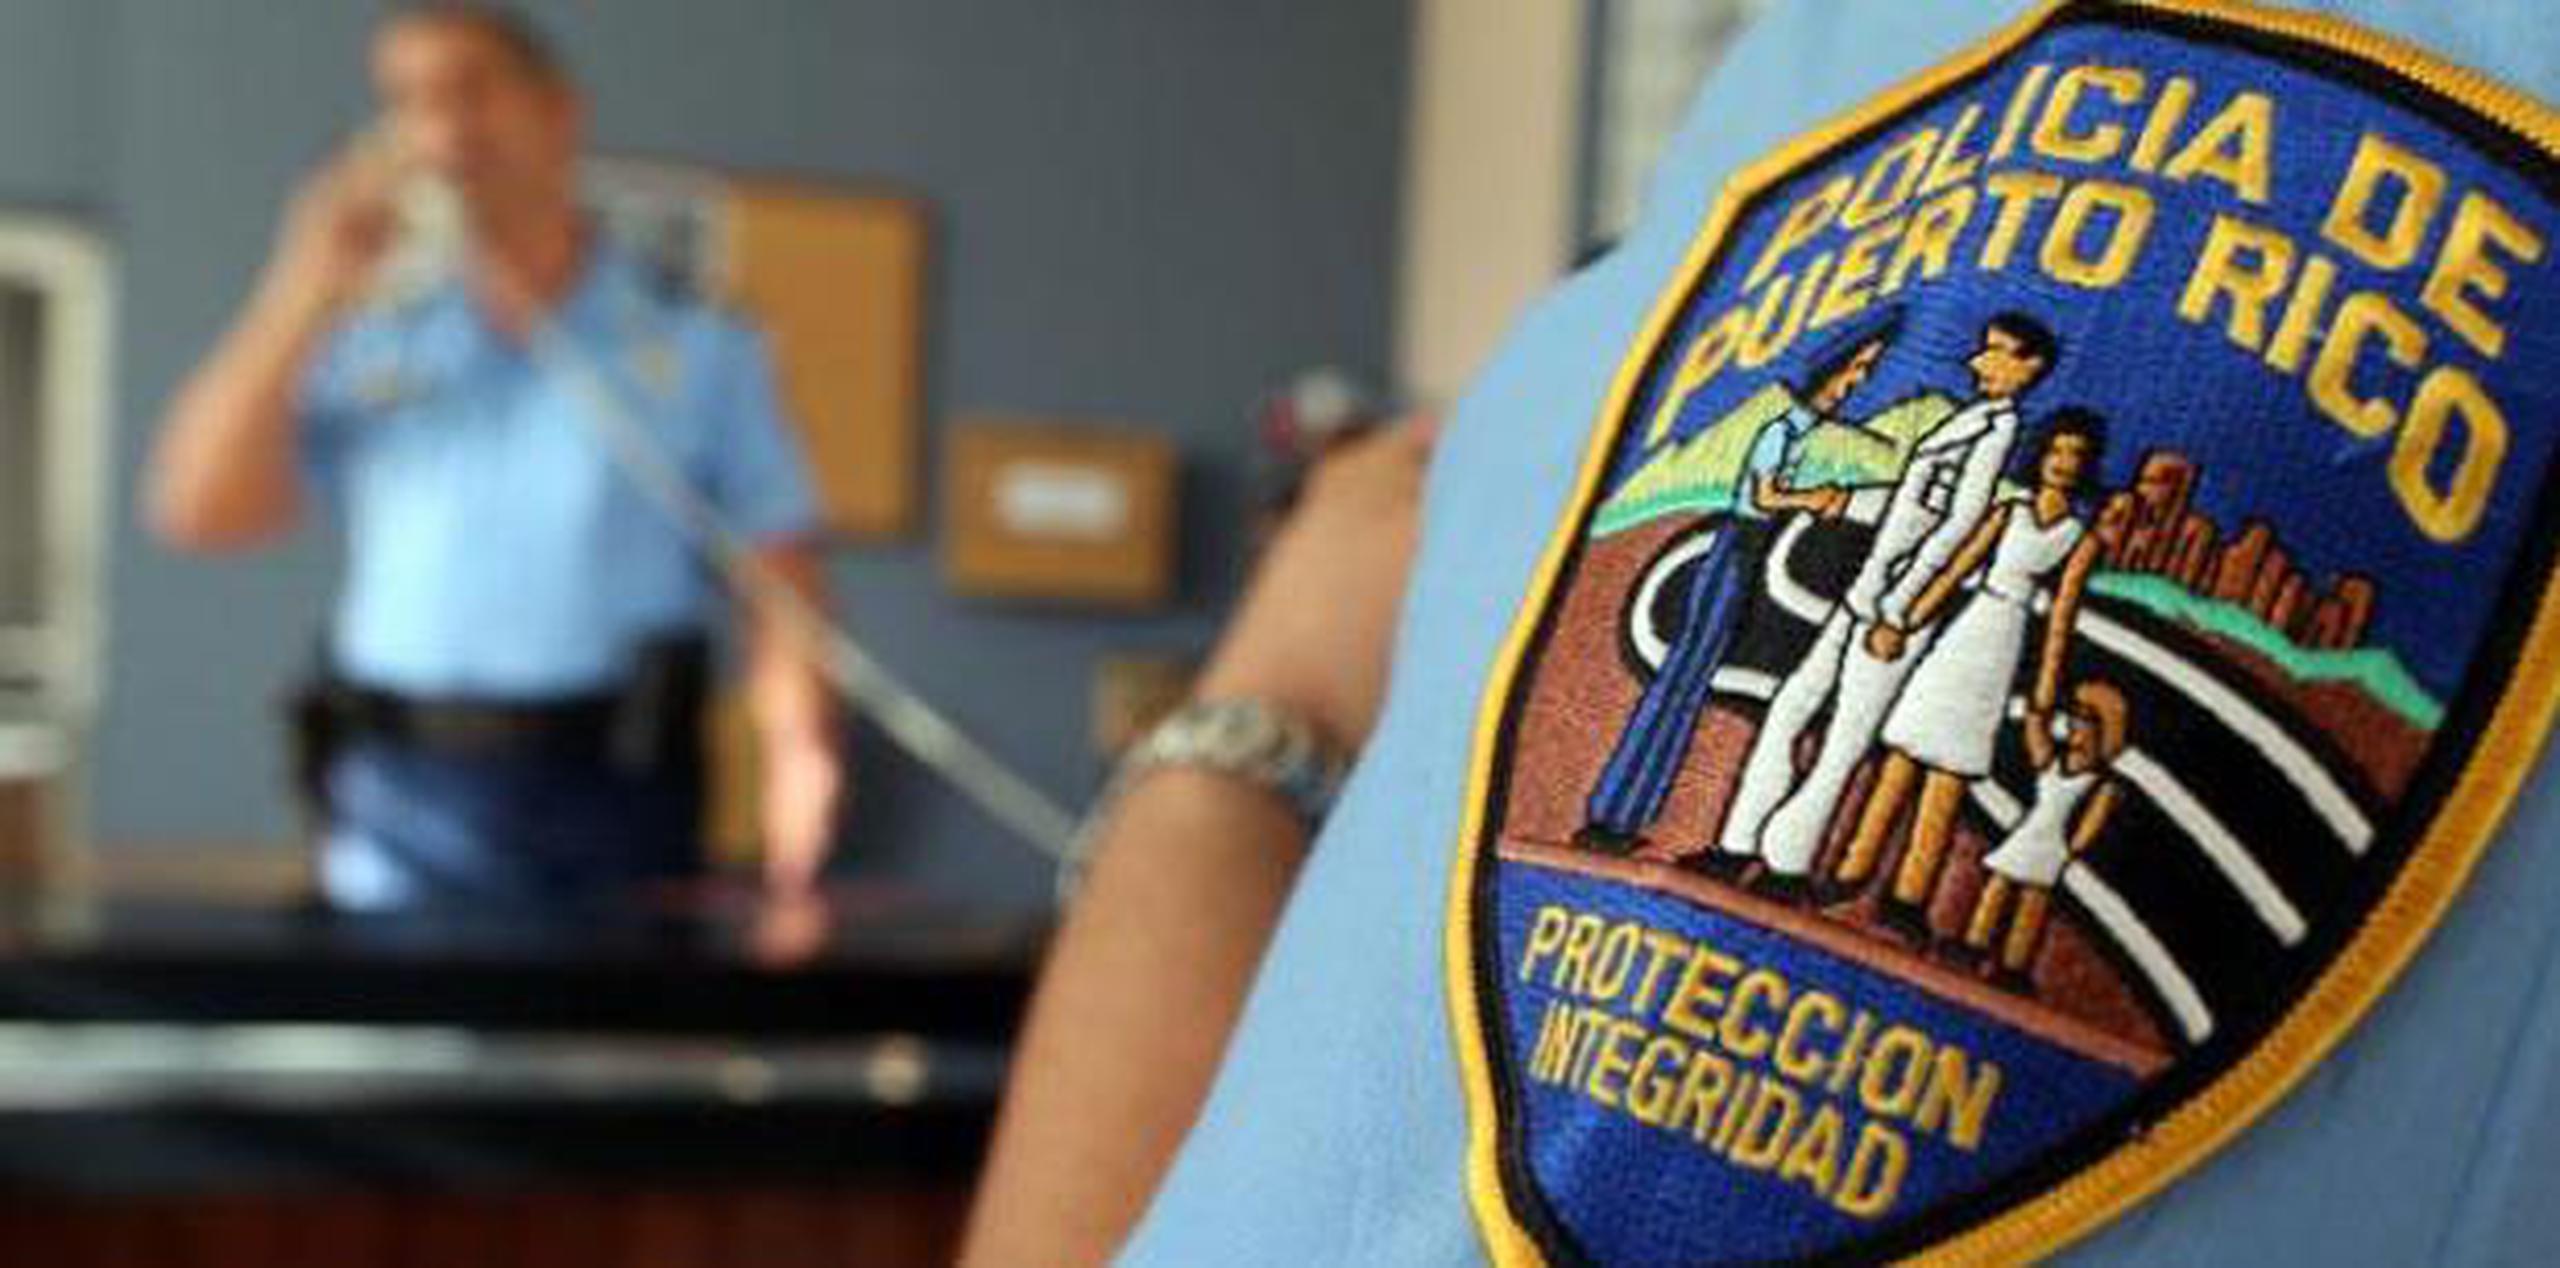 Agentes adscritos a la División de Vehículos Hurtados de San Juan se hicieron cargo de las pesquisas. (archivo)

